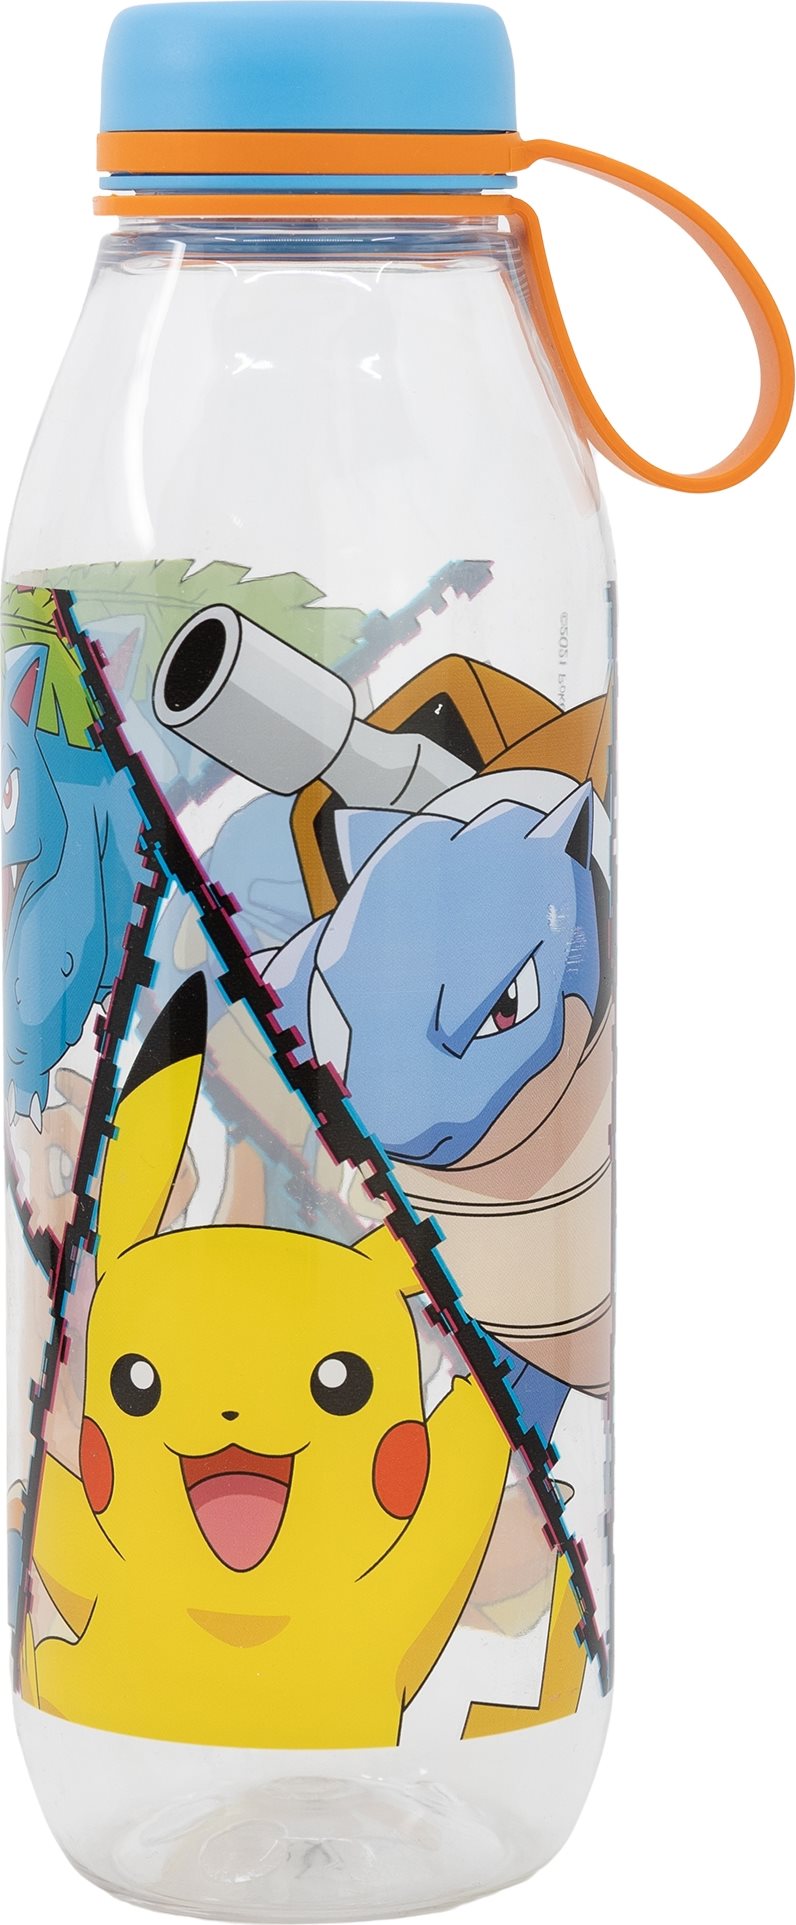 STOR Láhev na pití Pokémon 650 ml